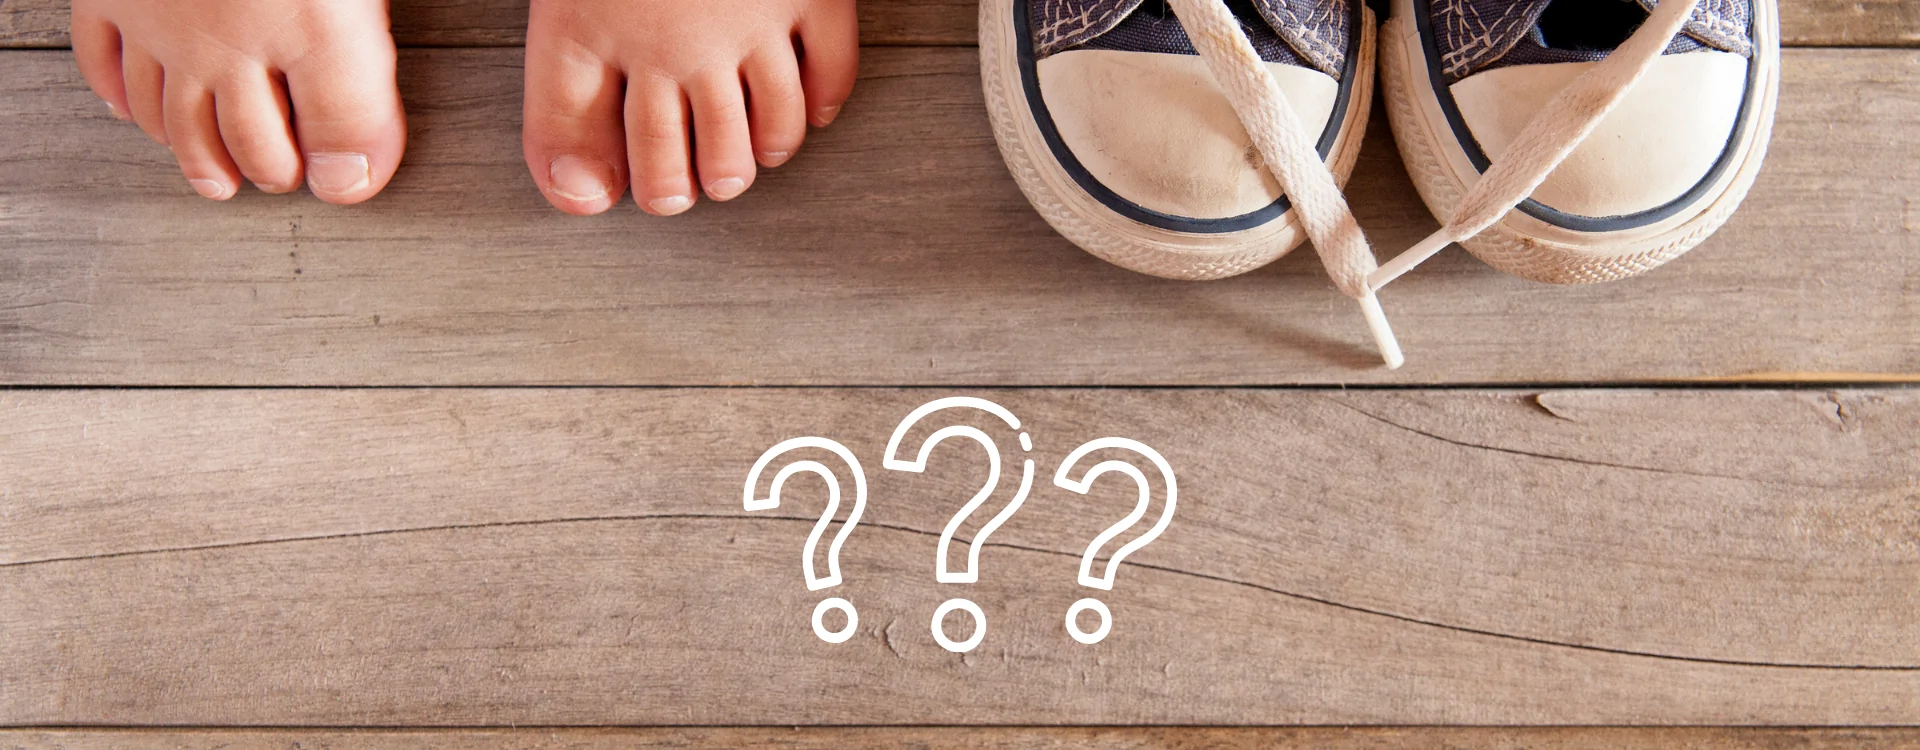 Jak dobrać buty dla dziecka? - poradnik krok po kroku